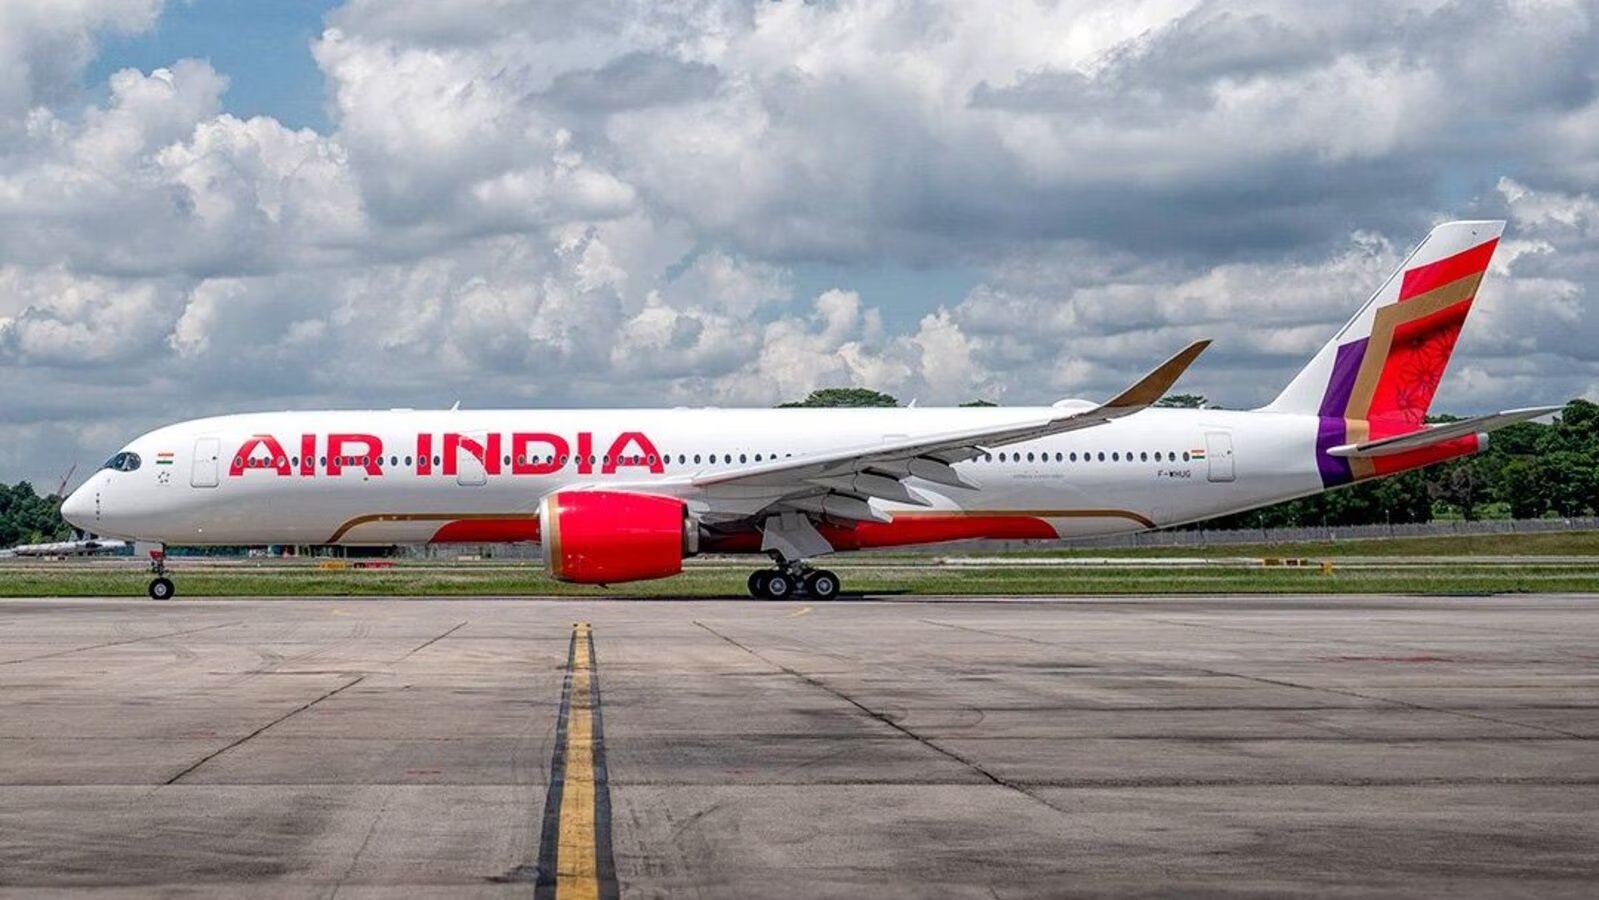 Air India express के उड़ते विमान में लगी आग, IGI दिल्ली एयरपोर्ट पर इमरजेंसी
घोषित - image